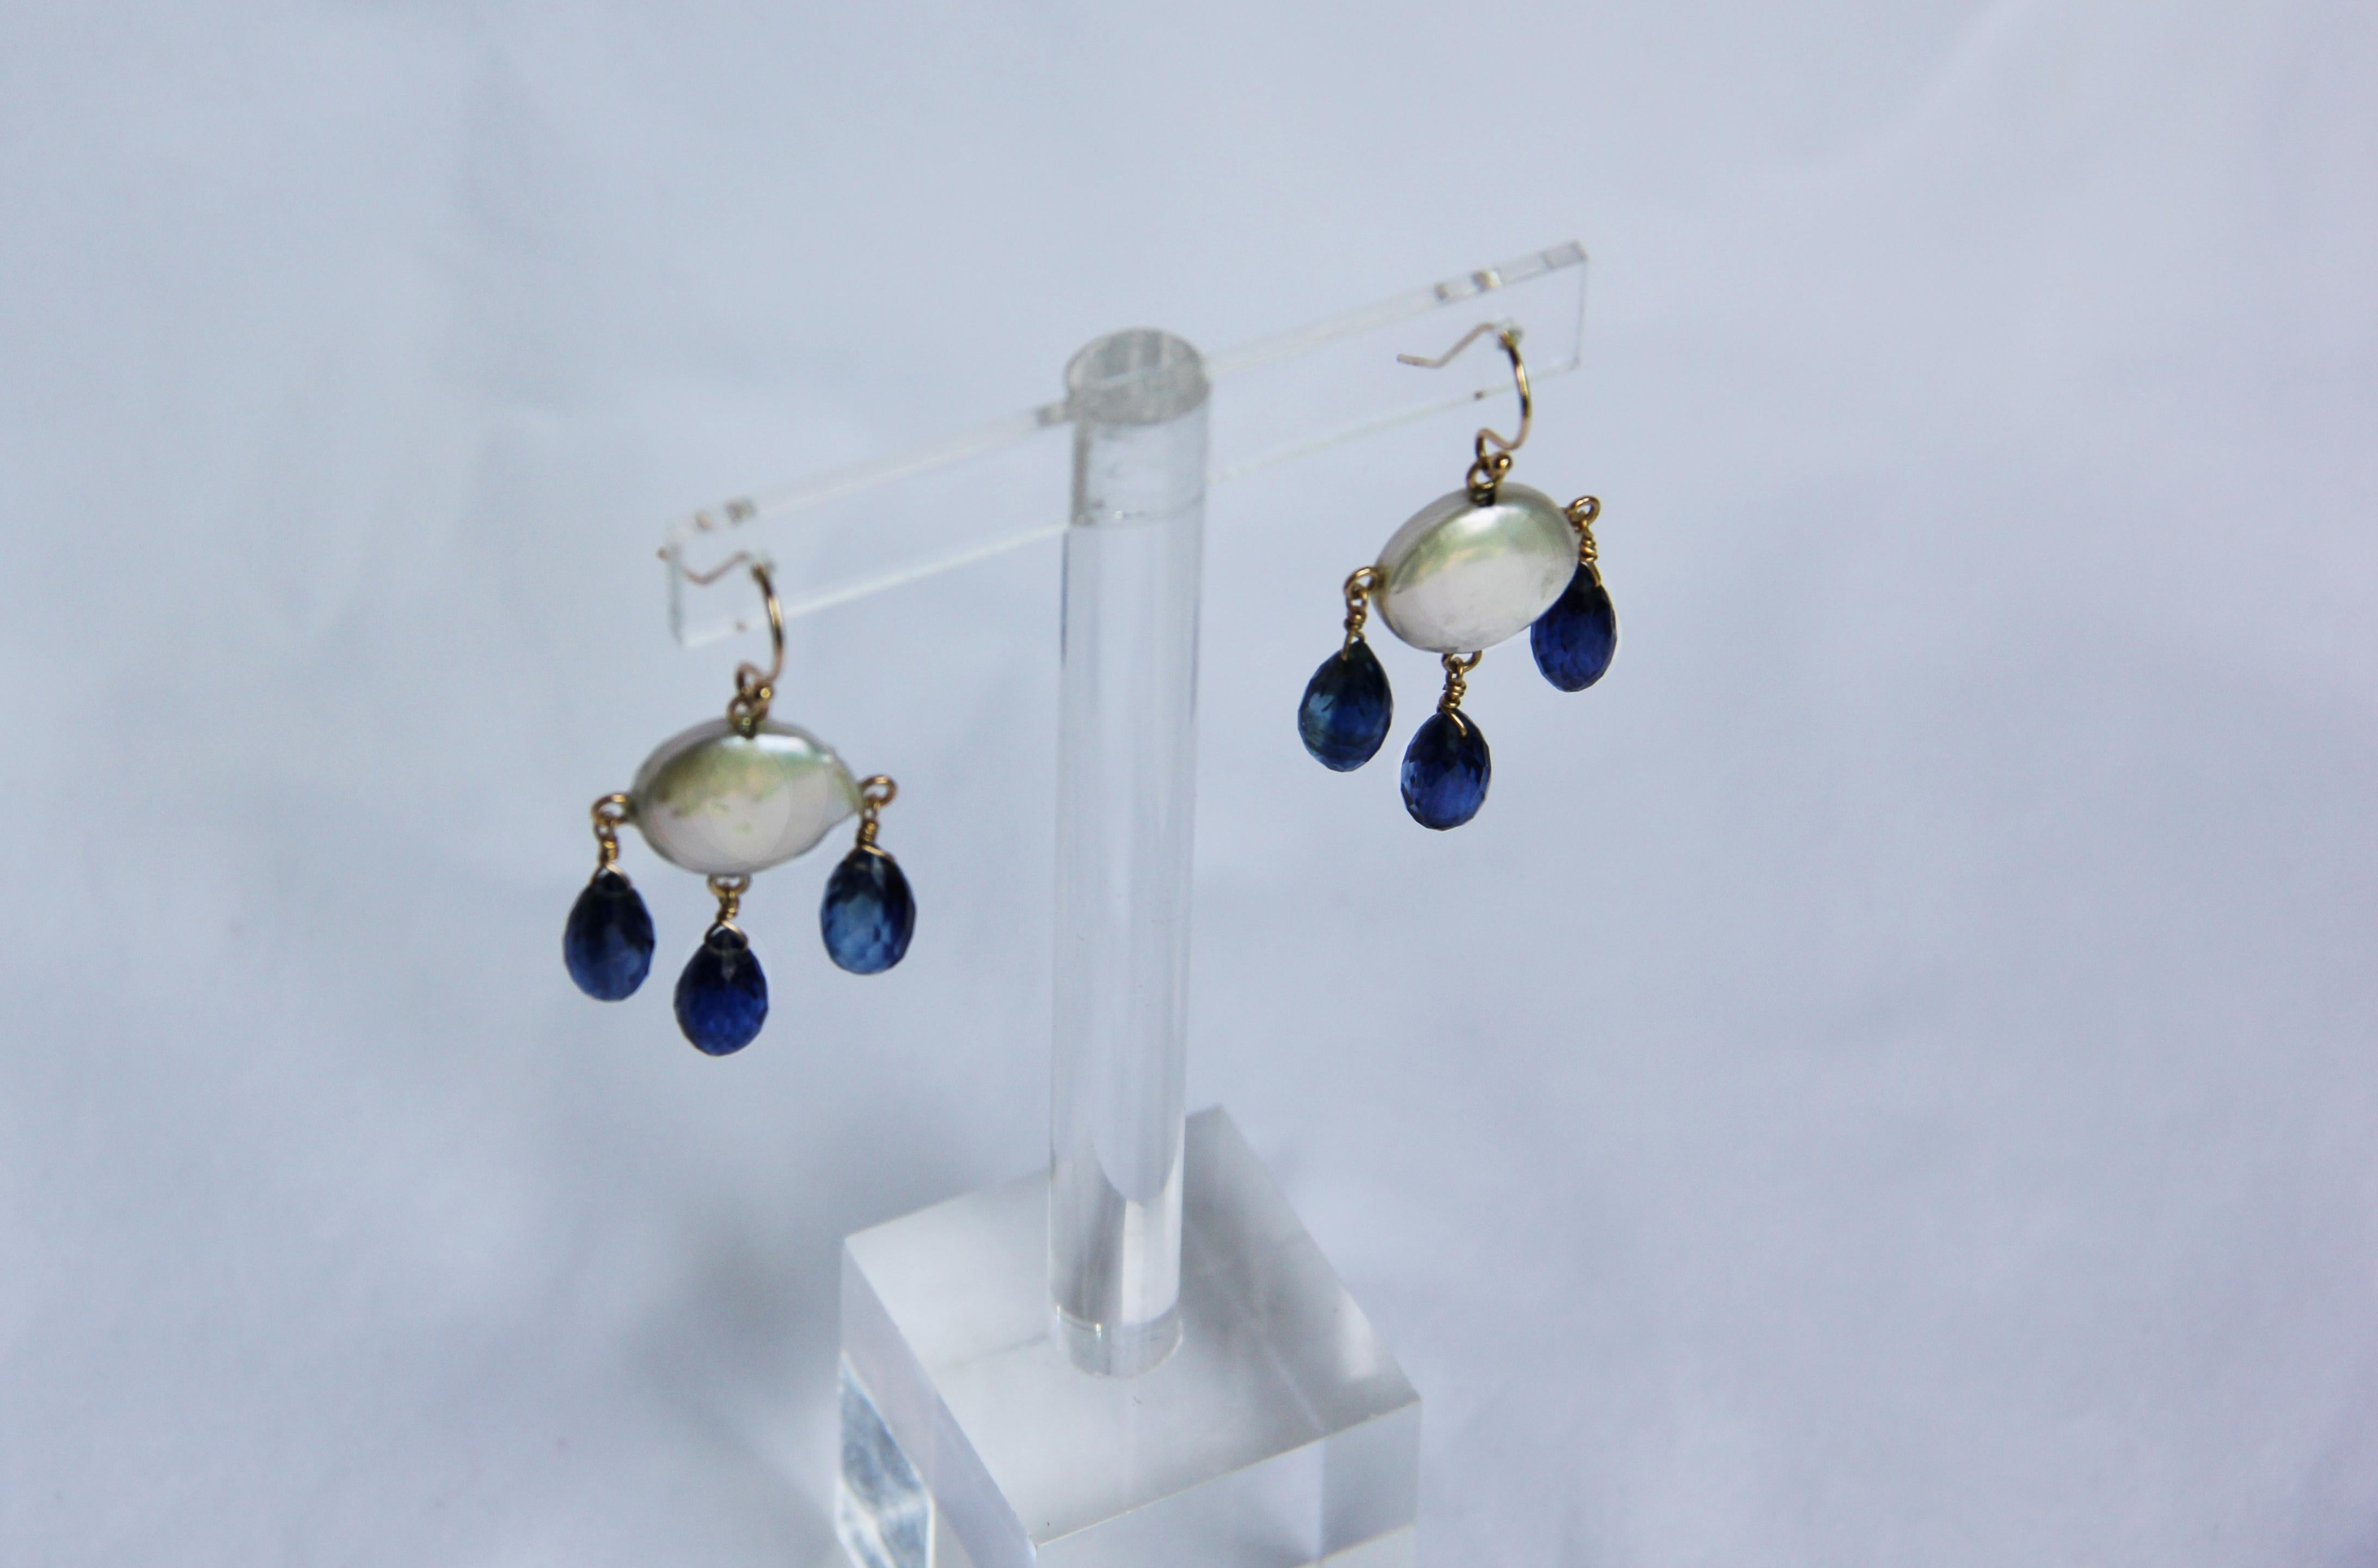 Wunderschönes Paar Ohrringe von Marina J. Dieses Paar Kronleuchter-Ohrringe besteht aus kleinen Münzperlen, die einen herrlich schillernden Glanz aufweisen und von facettierten Kyanit-Tränensteinen geschmückt werden. Die drei Kyanit-Steine blinken